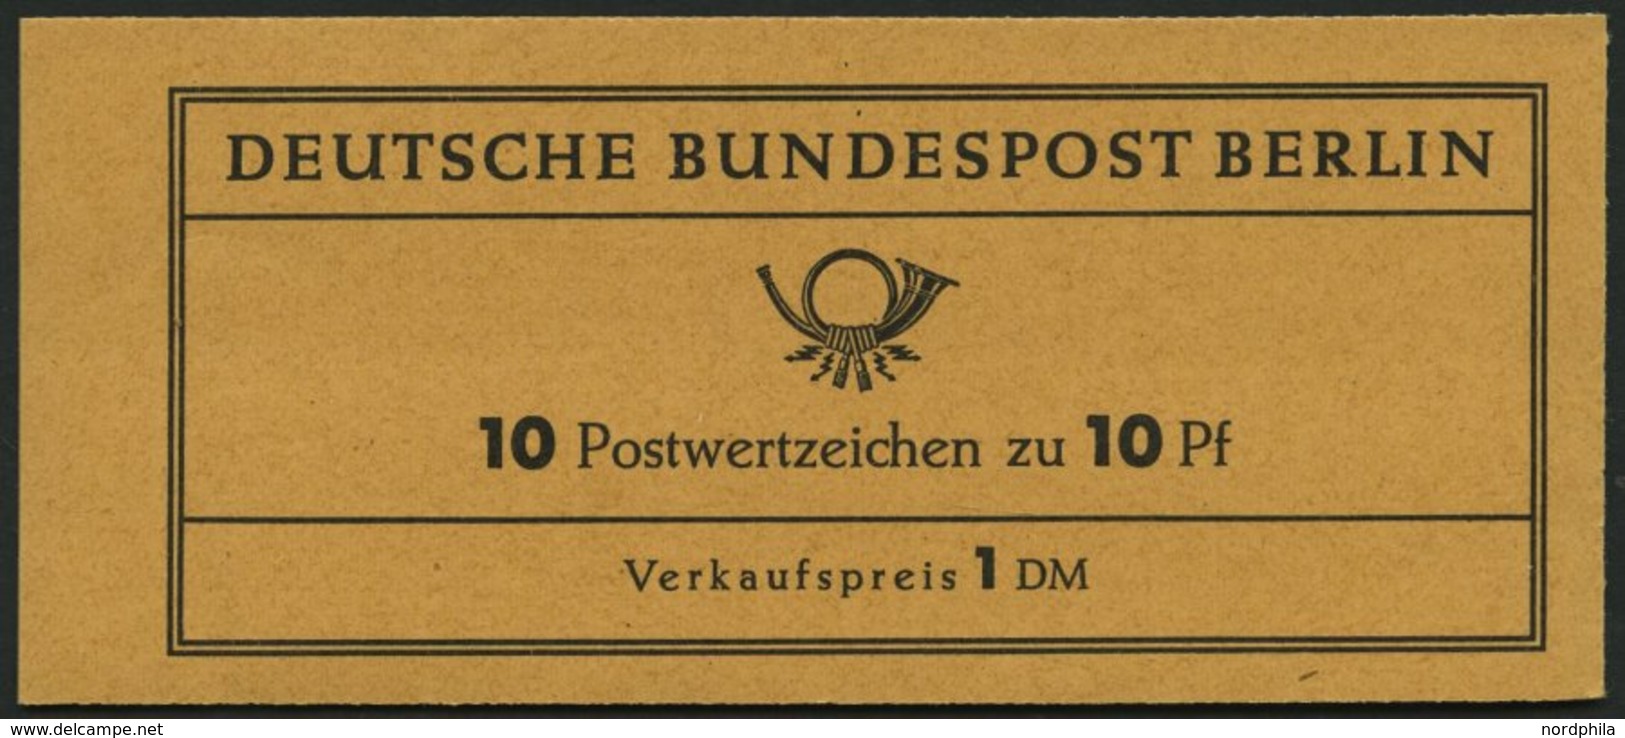 MARKENHEFTCHEN MH 3aRLVIIu2 **, 1962, Markenheftchen Dürer, Reklame Paul Ondrusch, Pracht, Mi. 50.- - Zusammendrucke